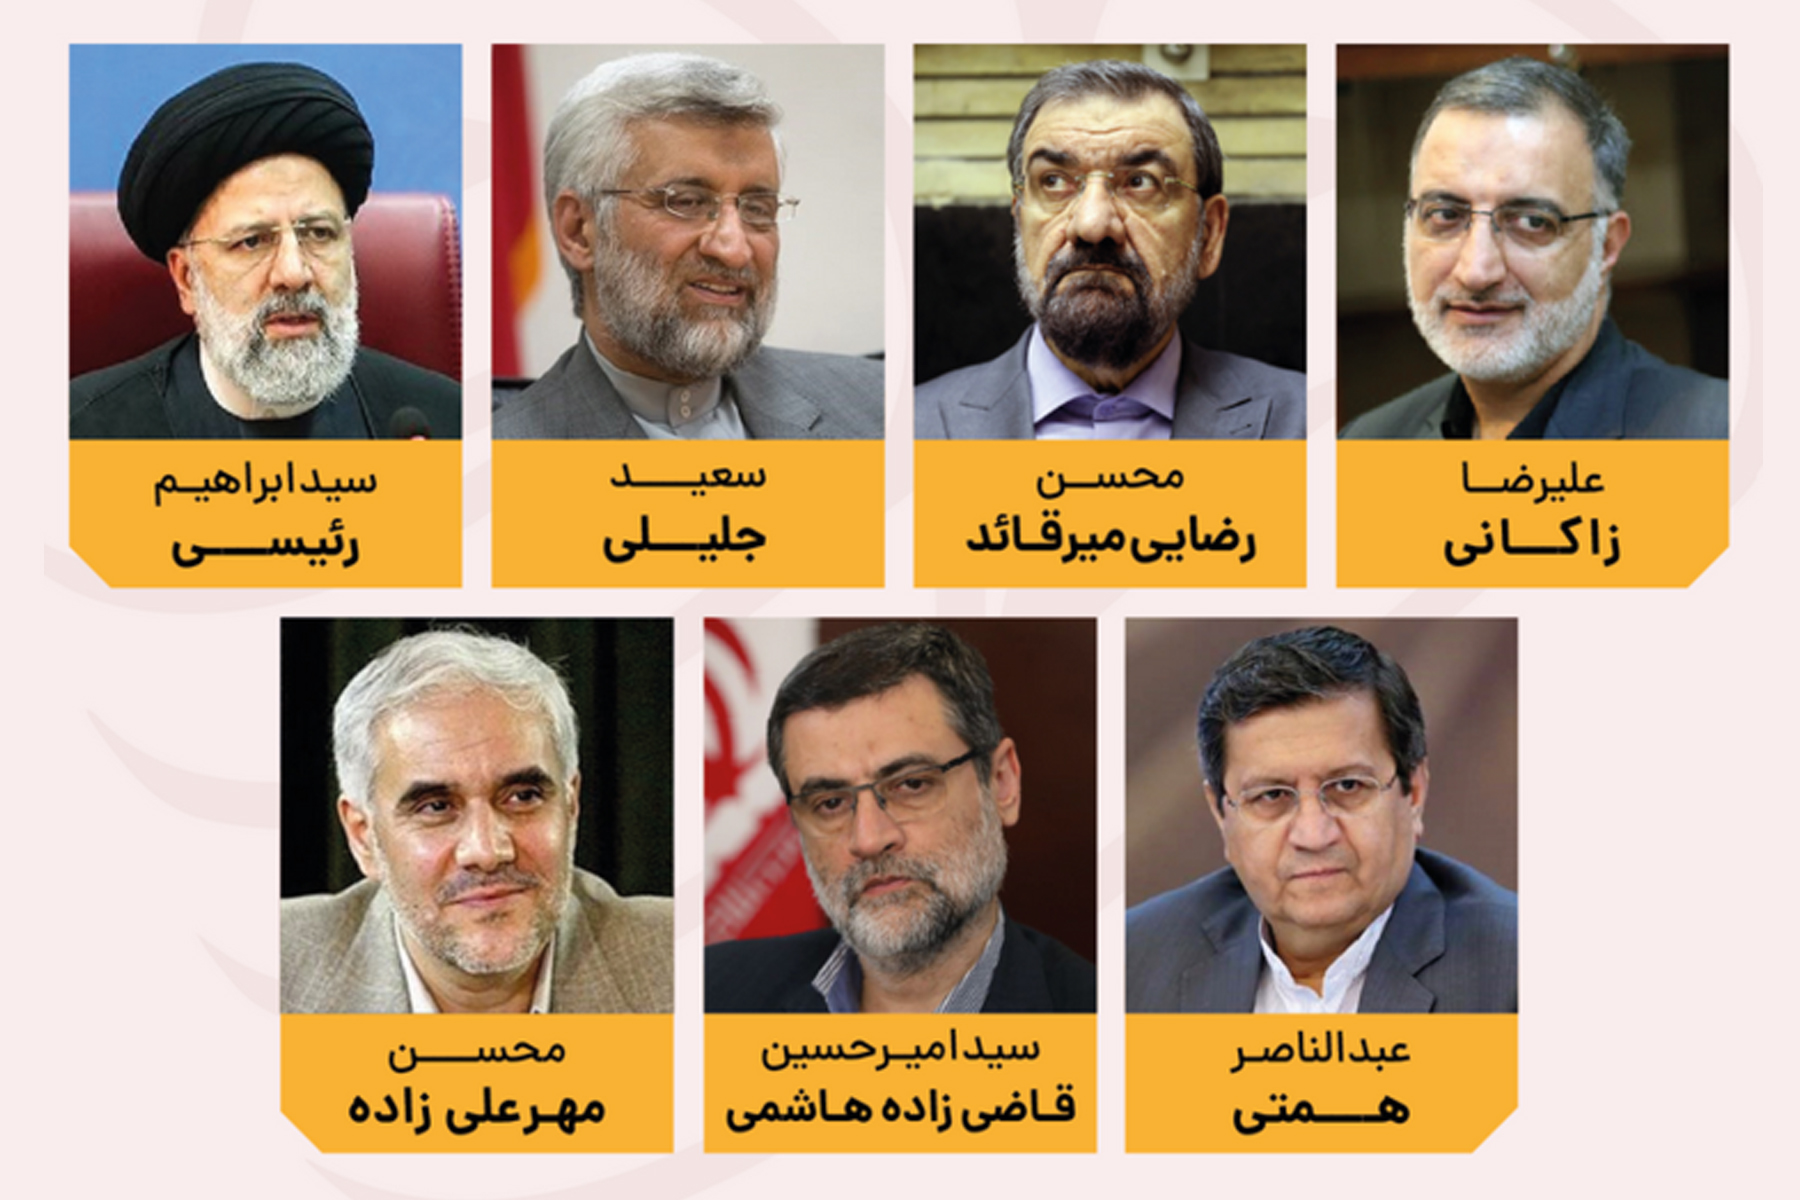 کاندیدهای نهایی انتخابات ریاست جمهوری ایران معرفی شدند